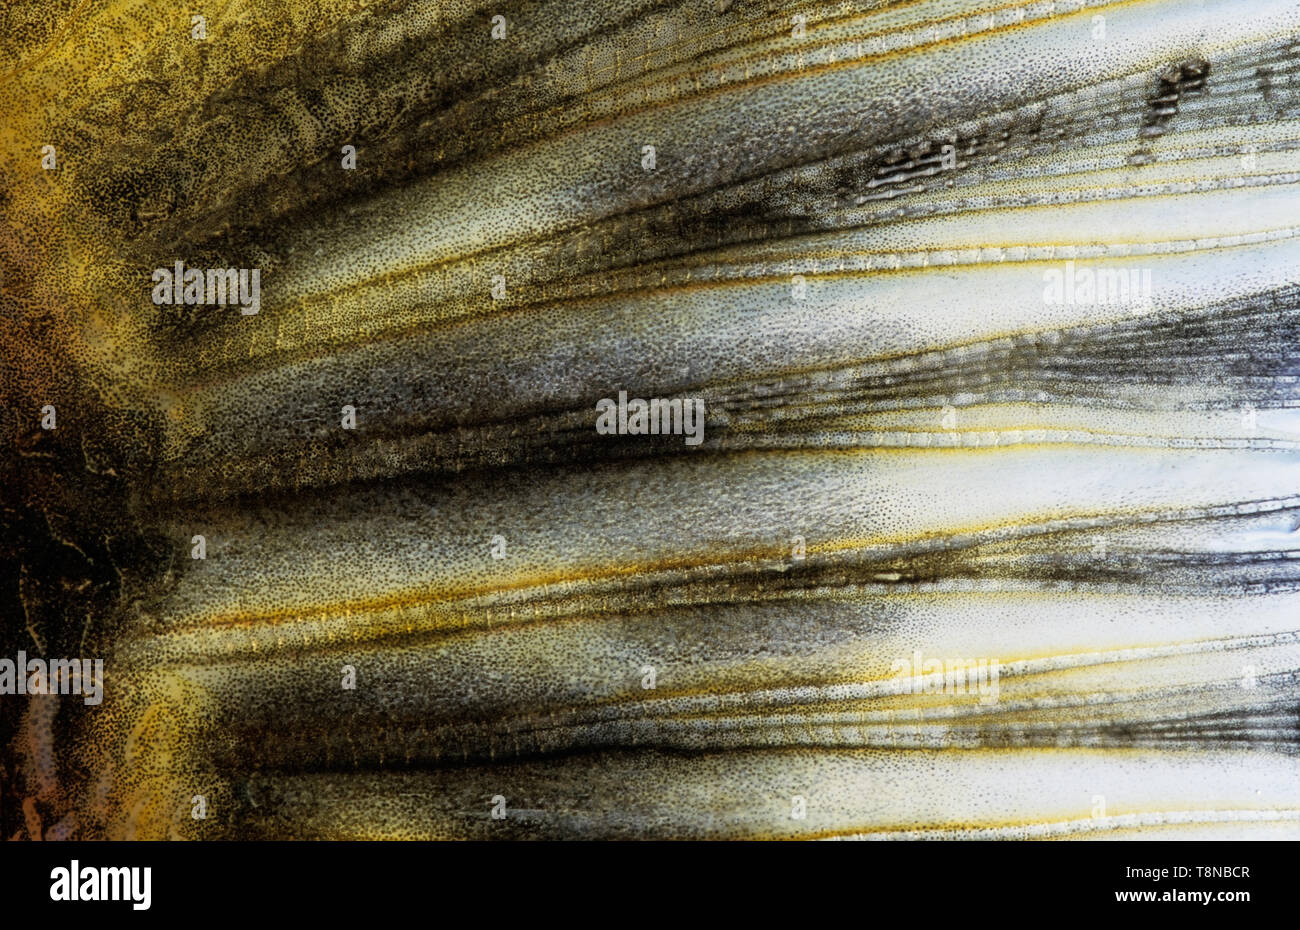 Luccio (Esox lucius)/caudale pinna di coda di close-up. Immagine appare un po' morbidi a causa del muco epidermica che copre la pelle di pesce. Foto Stock